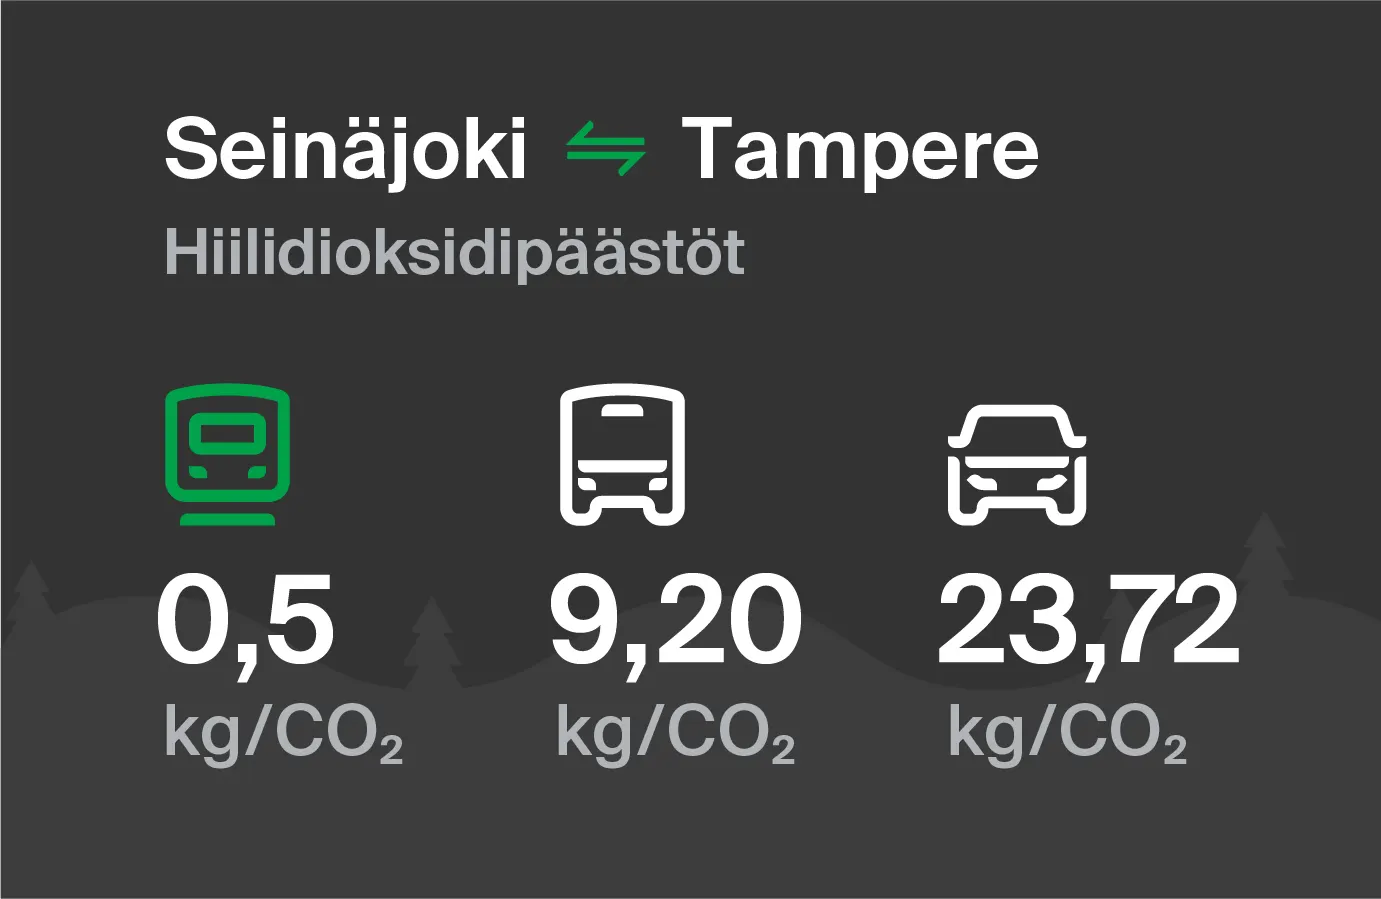 Koldioxidutsläpp från Seinäjoki till Tammerfors genom olika transportsätt: med tåg 0,5 kg/CO2, med buss 9,20 kg/CO2 och med bil 23,72 kg/CO2.